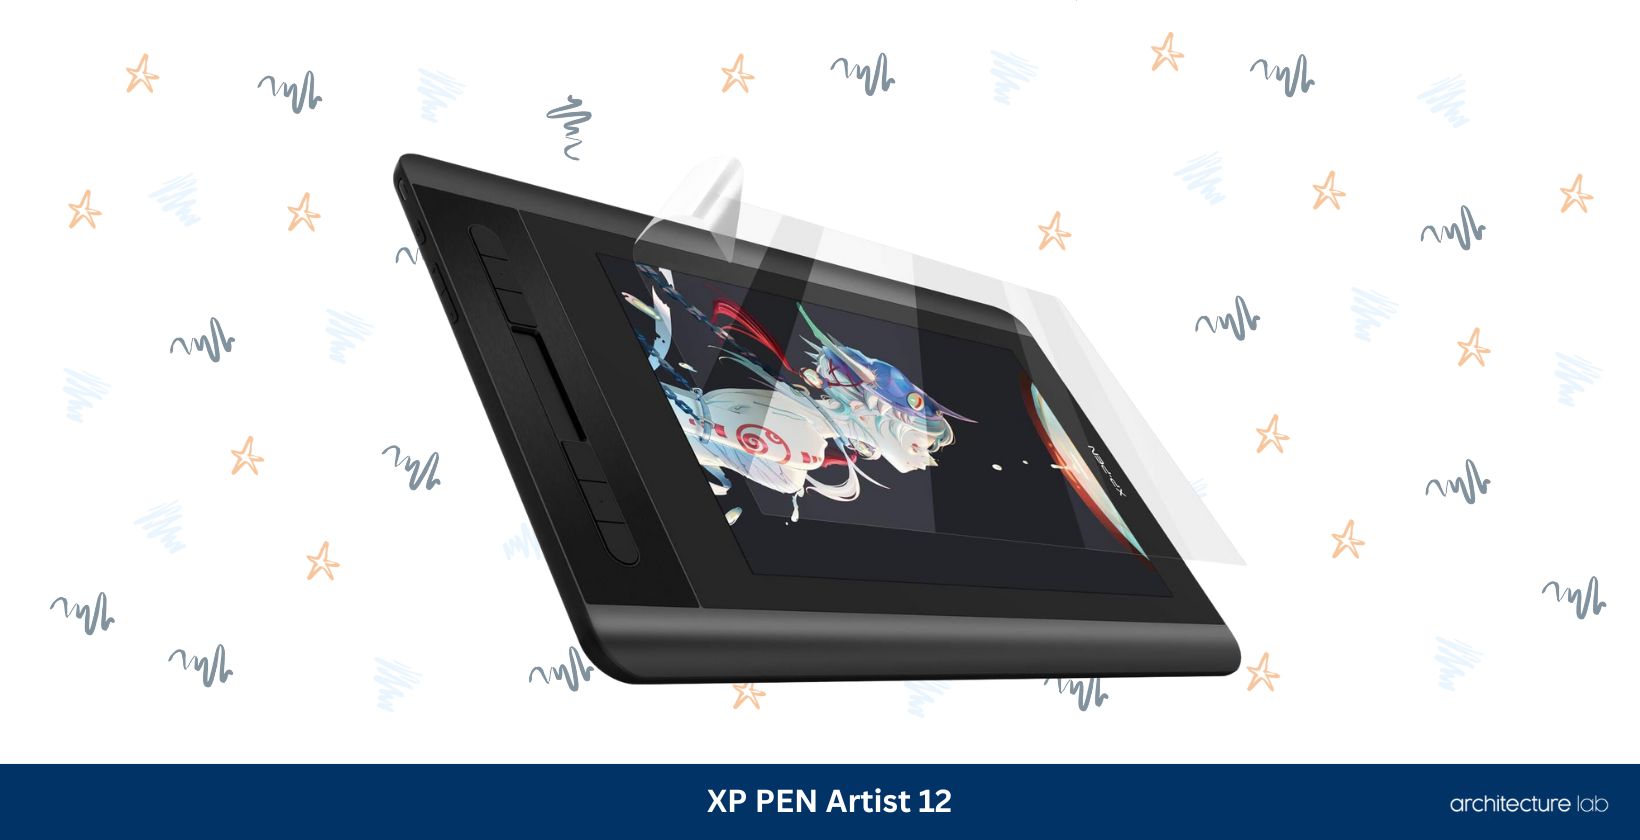 Xp pen artist 12